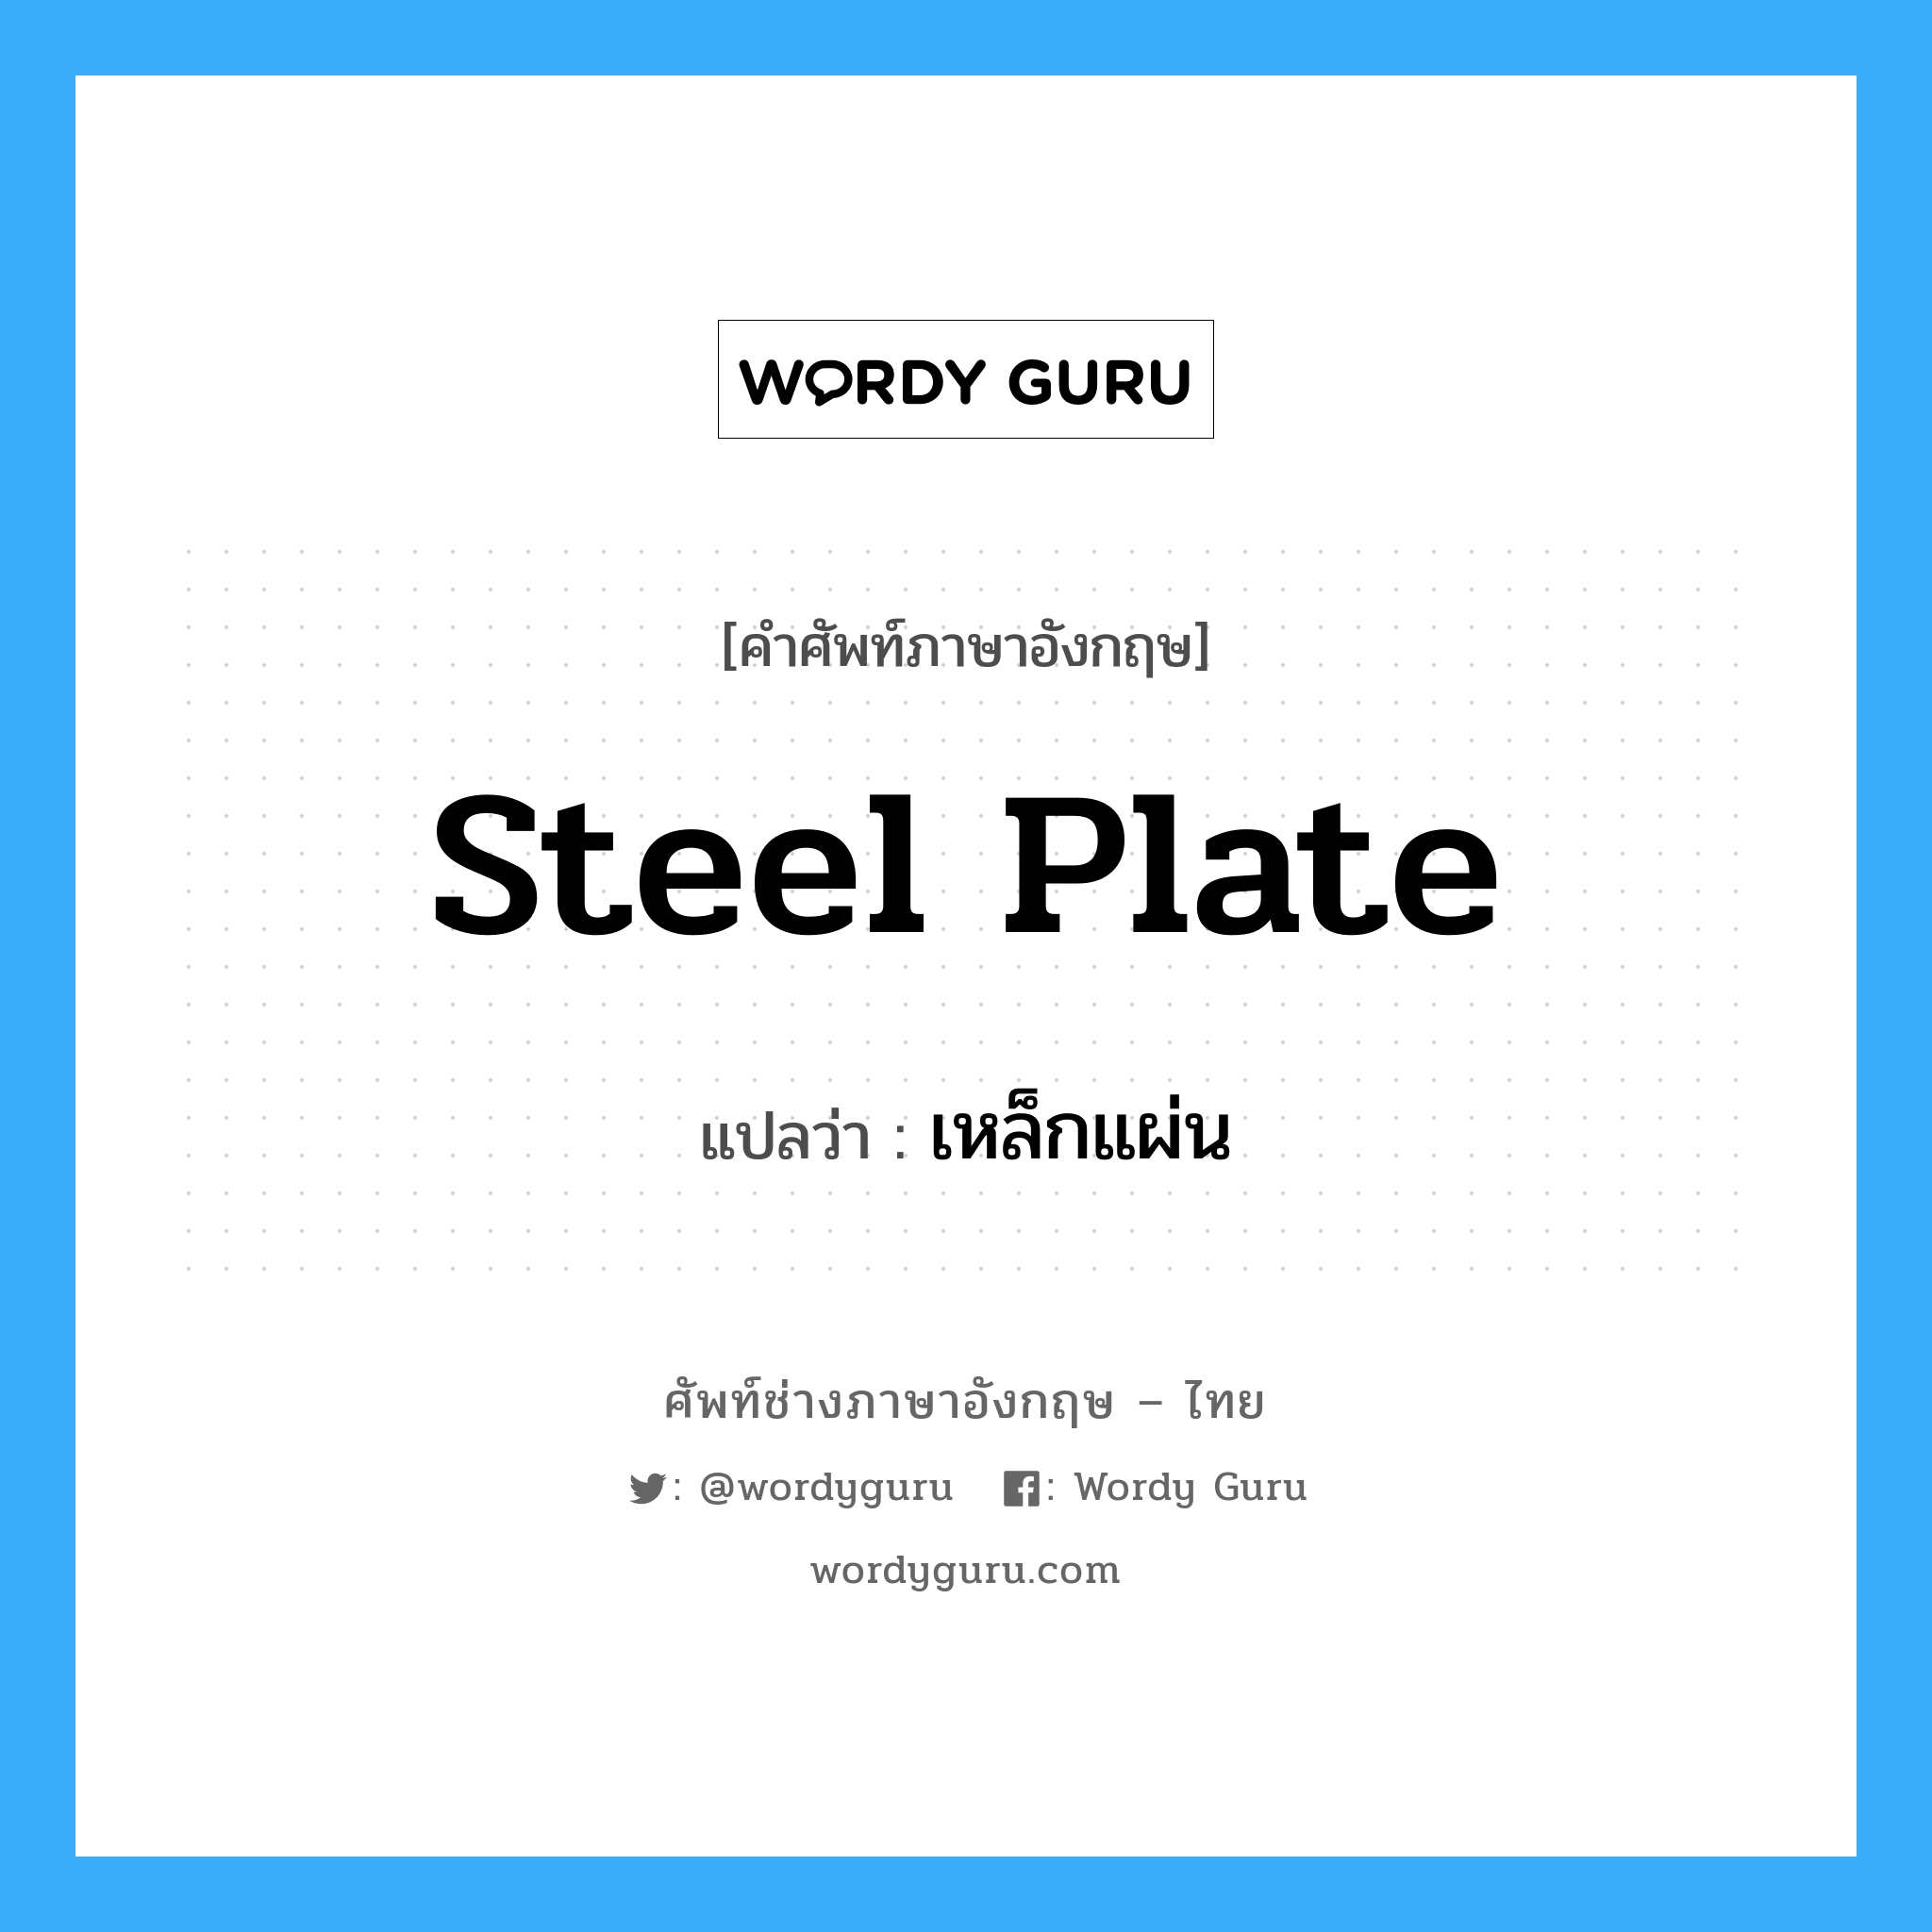 เหล็กแผ่น ภาษาอังกฤษ?, คำศัพท์ช่างภาษาอังกฤษ - ไทย เหล็กแผ่น คำศัพท์ภาษาอังกฤษ เหล็กแผ่น แปลว่า steel plate